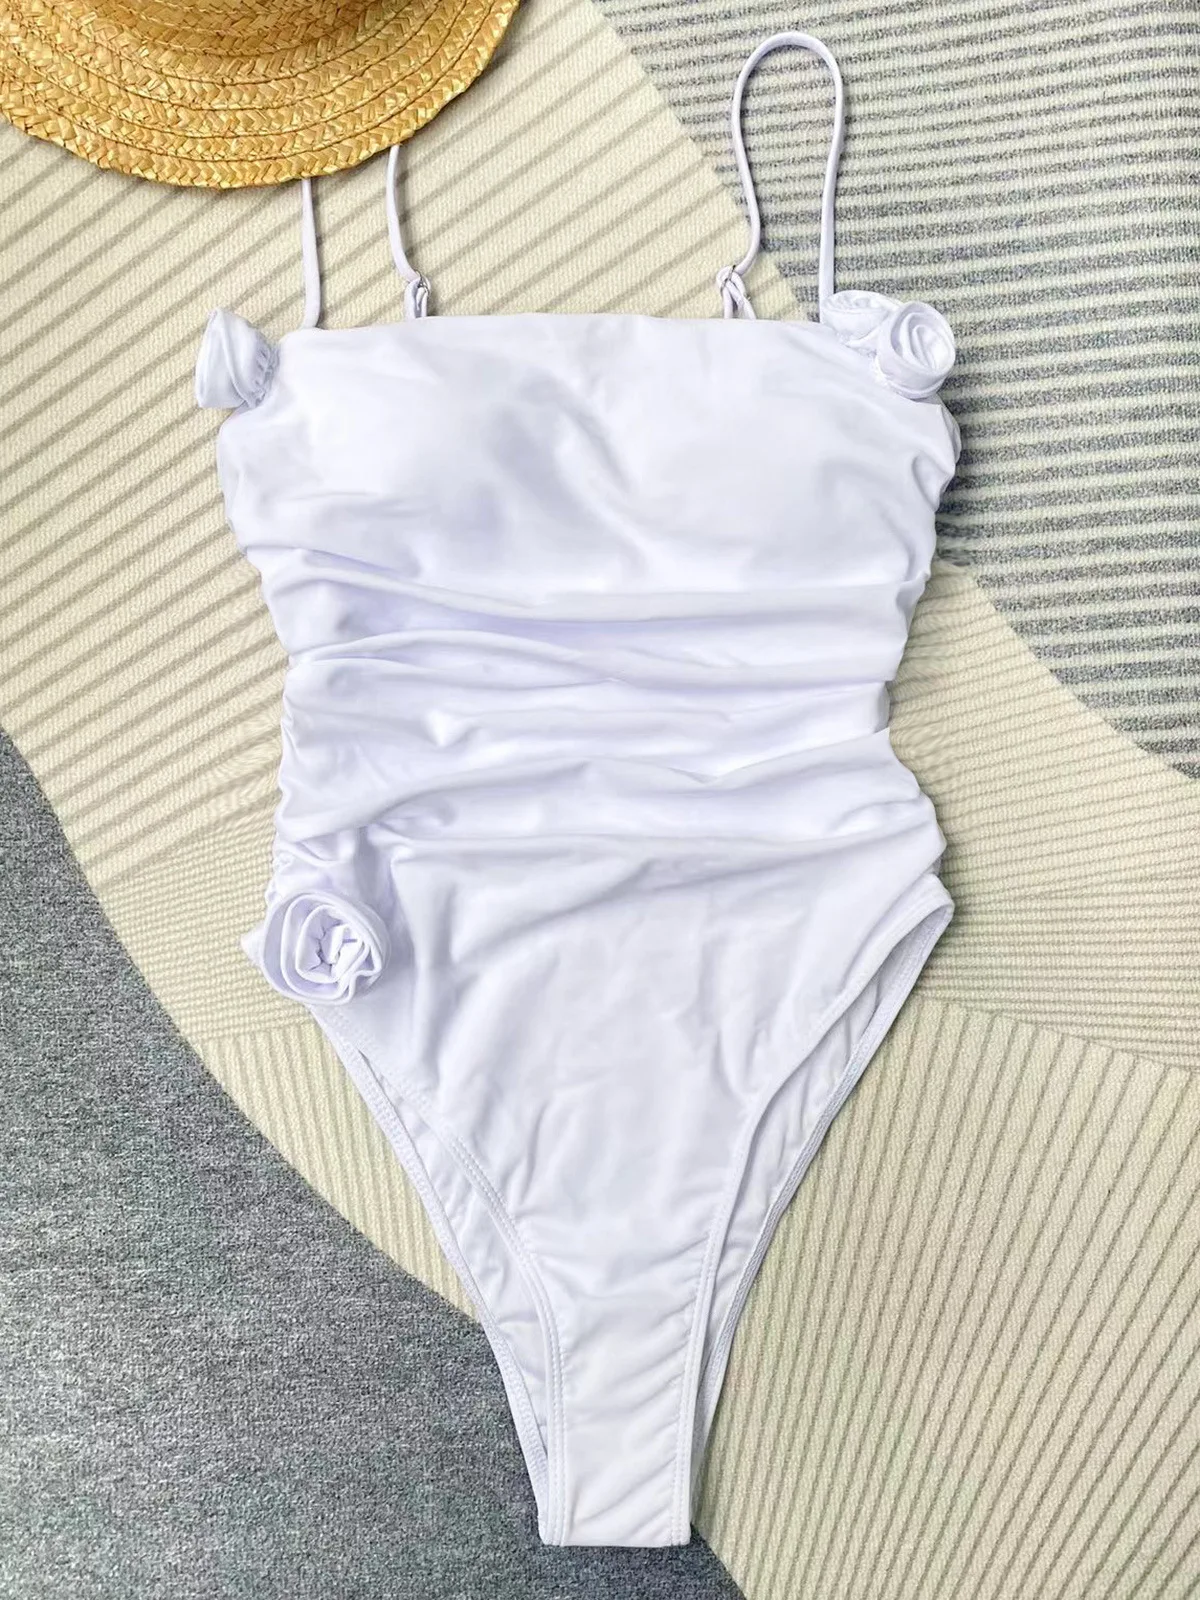 

Сексуальный купальник с белыми цветами, женские цельные купальники, купальный костюм со складками и высокими штанинами, купальники, купальный костюм, пляжная одежда для плавания